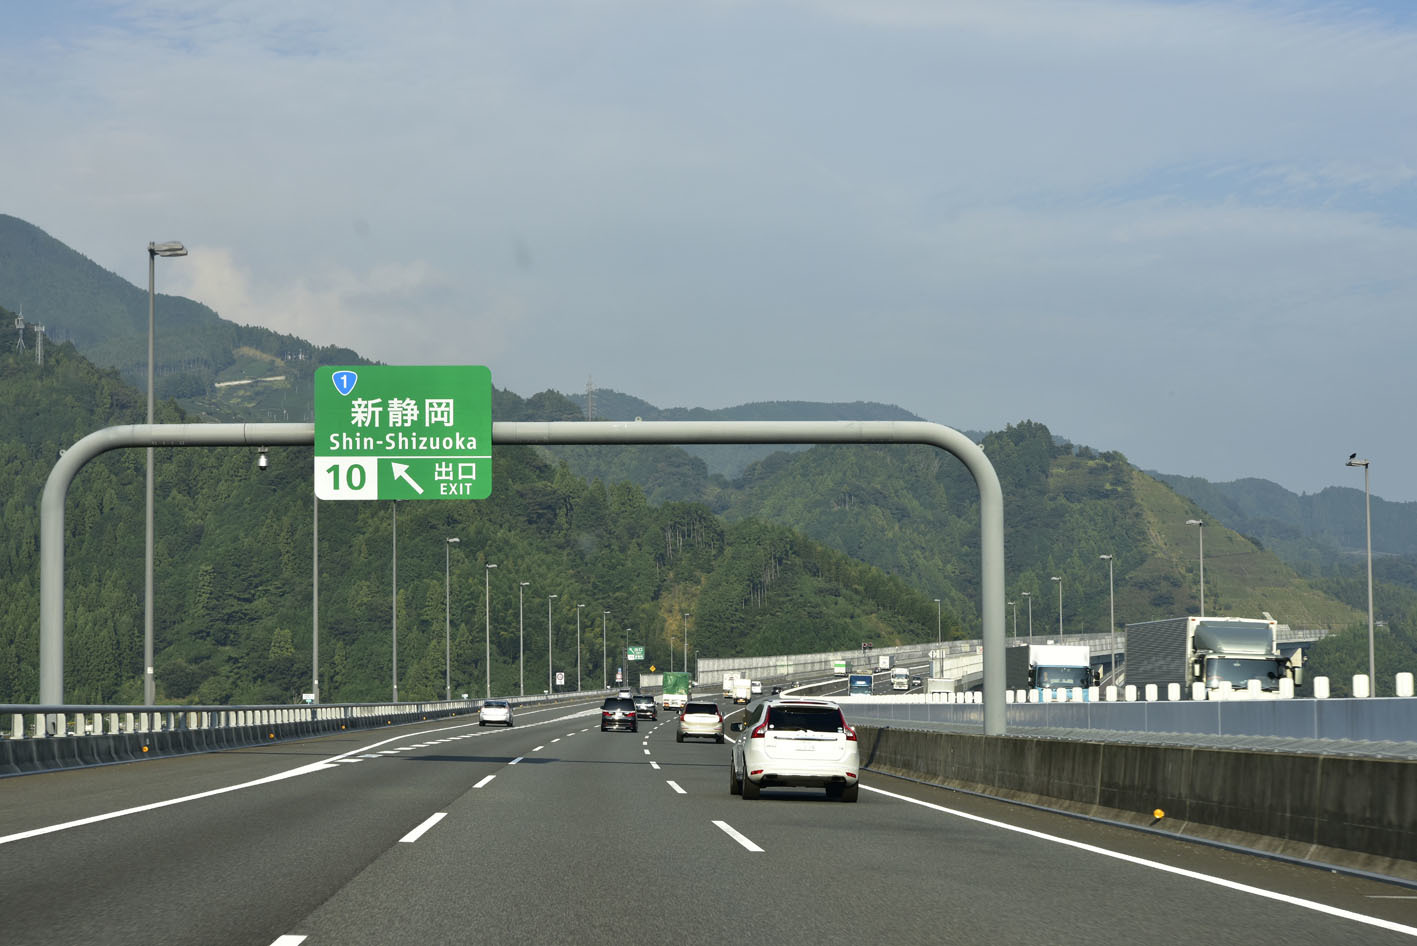 11月から新東名で、12月から東北道でまずは最高速度制限110km/hに引き上げ開始